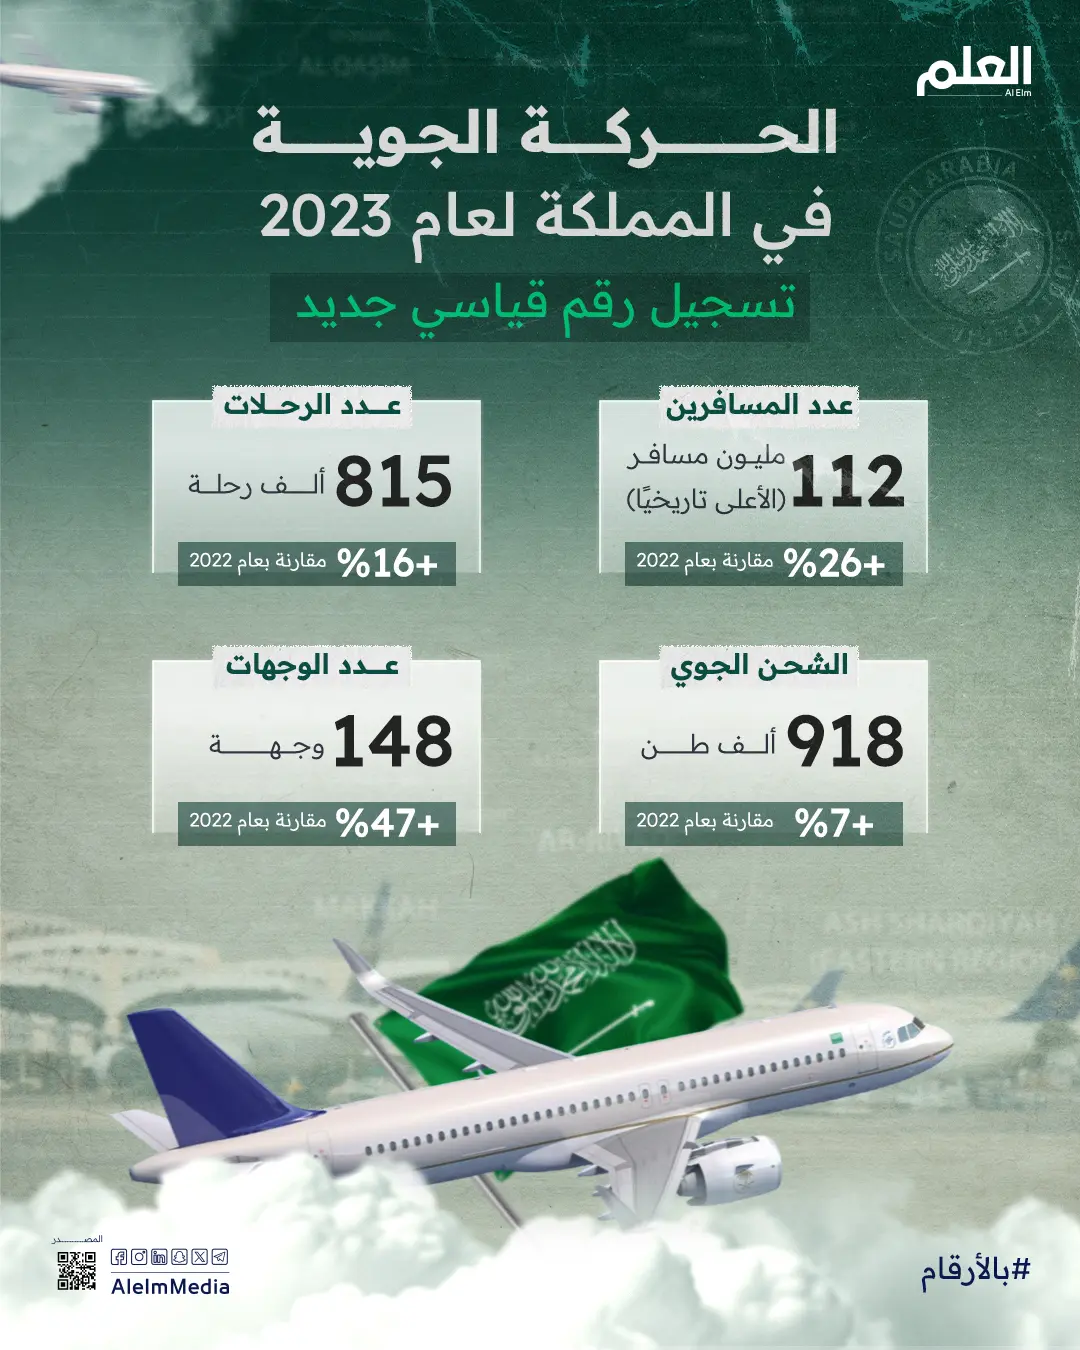 الحركة الجوية في المملكة لعام 2023